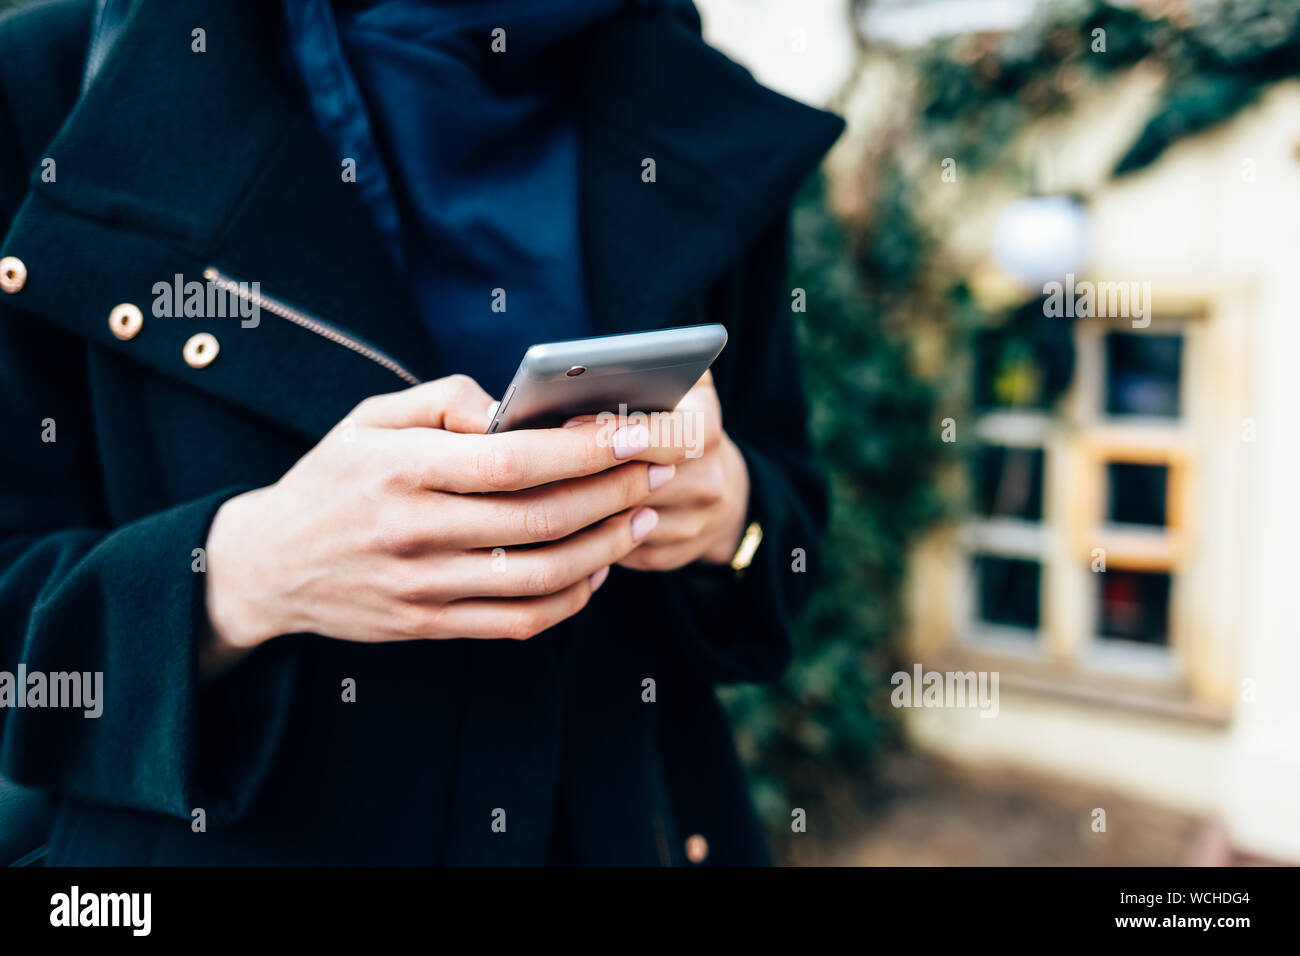 Jeune femme vêtue d'un élégant manteau noir holding mobile phone debout sur la rue de ville en journée, close-up. Banque D'Images